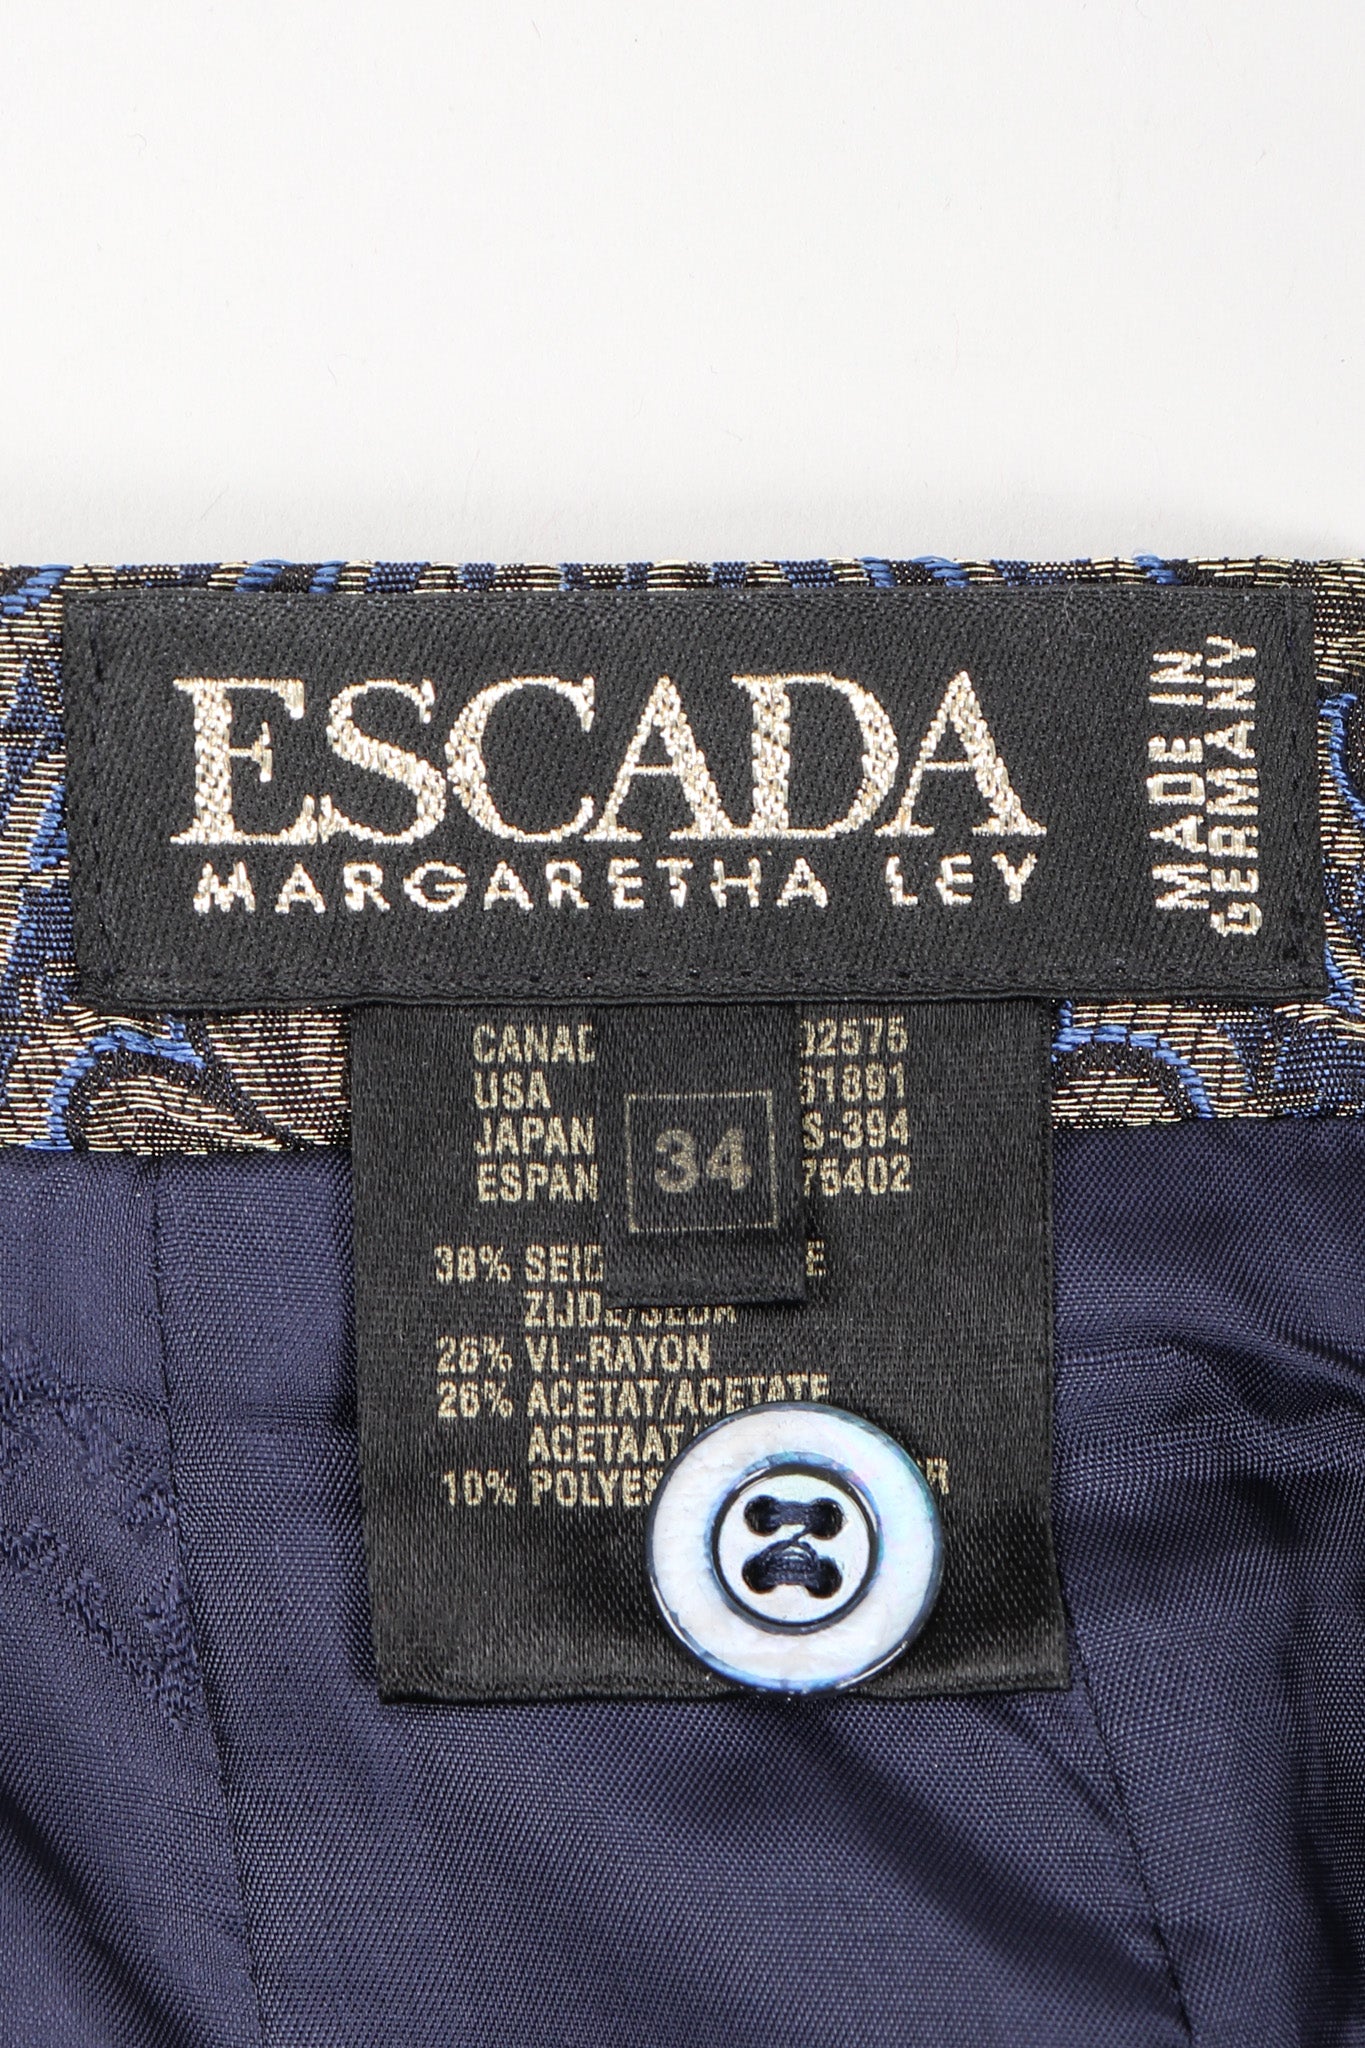 Recess Los Angeles Vintage Escada Royal Golden Brocade Jacket & Pant Suit